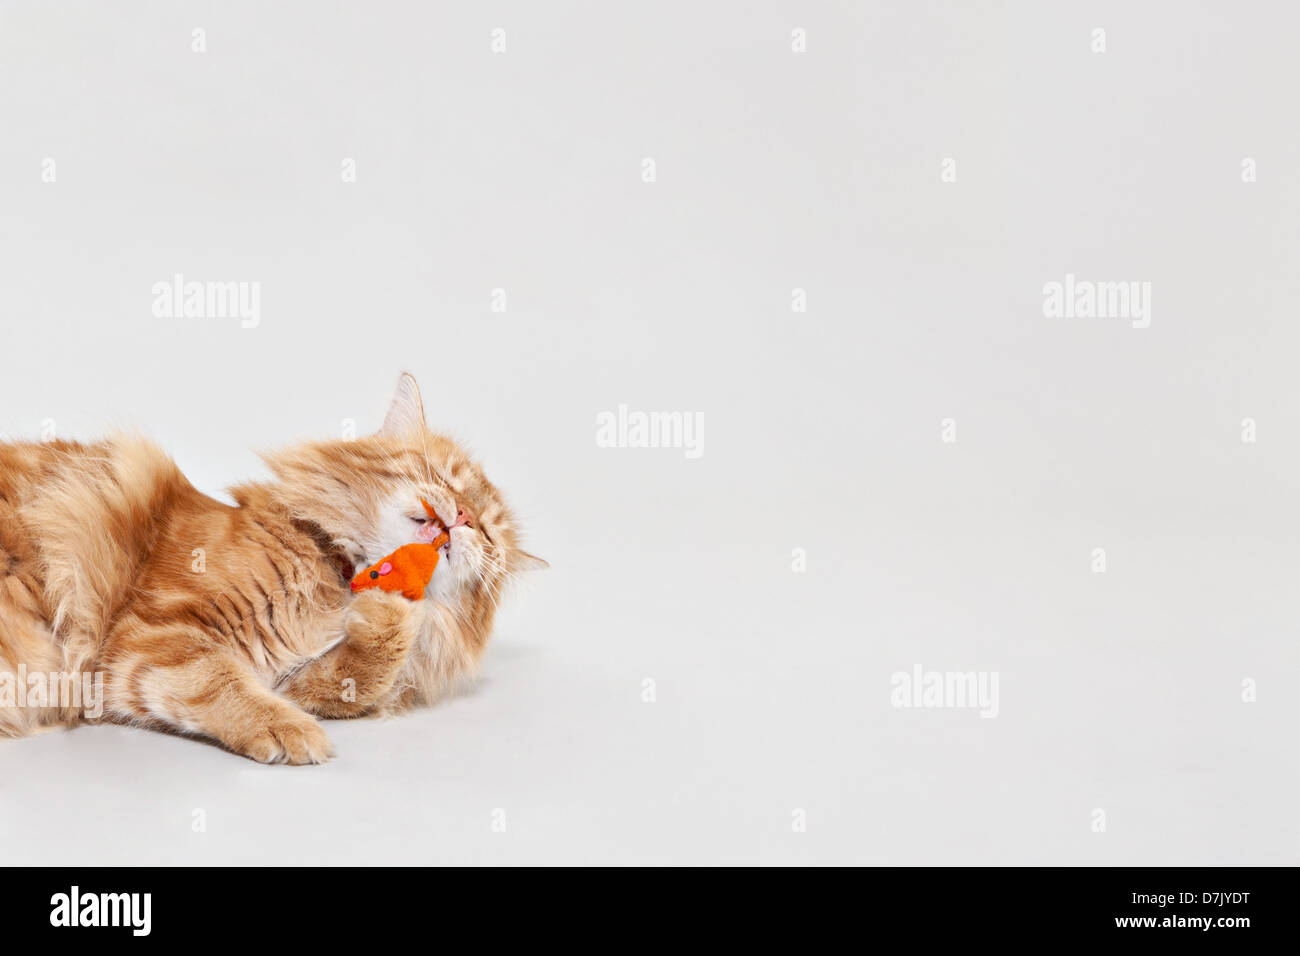 Lo zenzero Cymric Manx cat giocando con mouse arancione giocattolo in studio Foto Stock